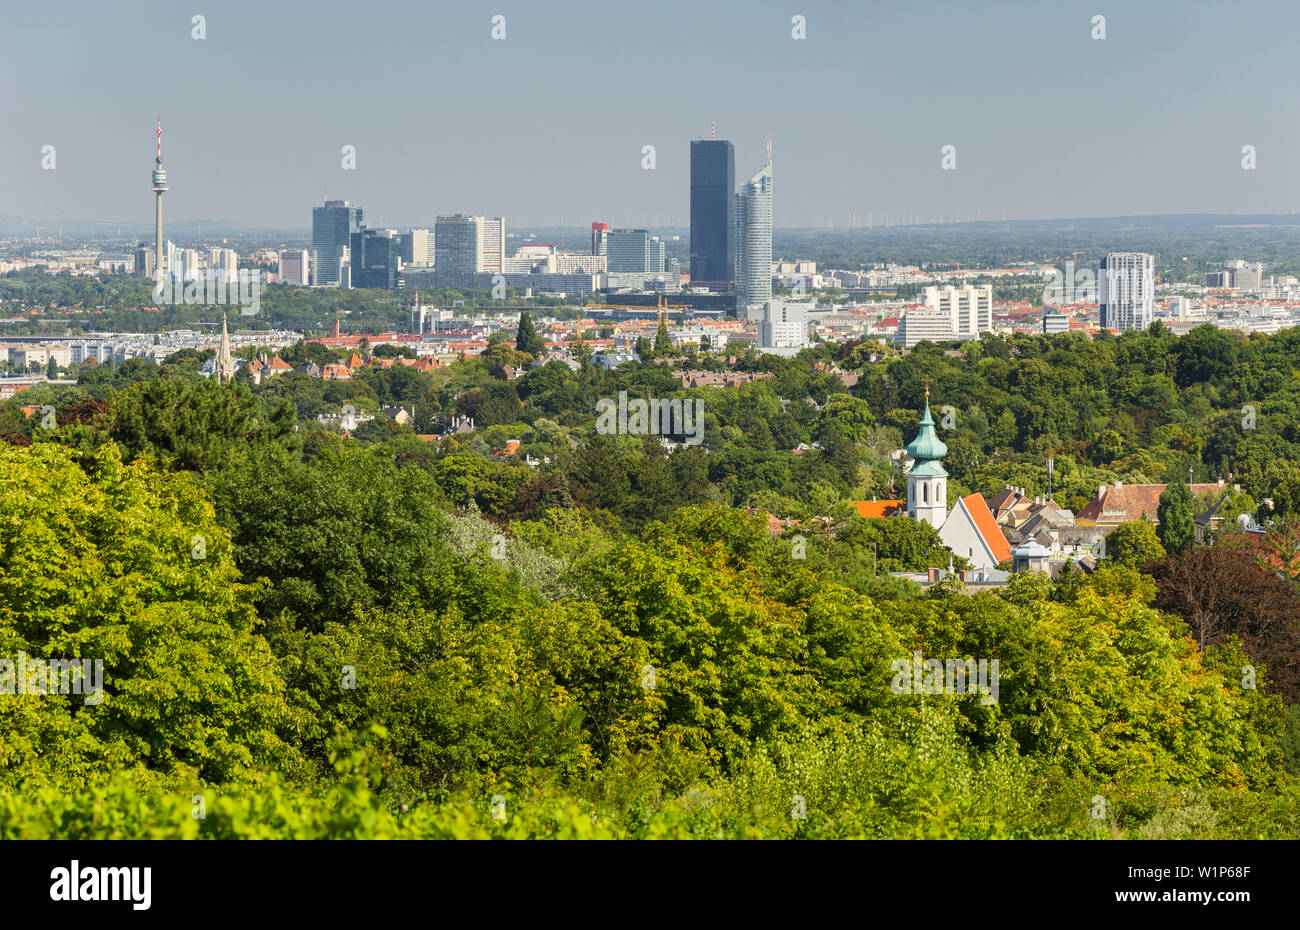 Blick über Wien Cobenzl vom 19. Bezirk Döbling, Viena, Österreich Foto de stock